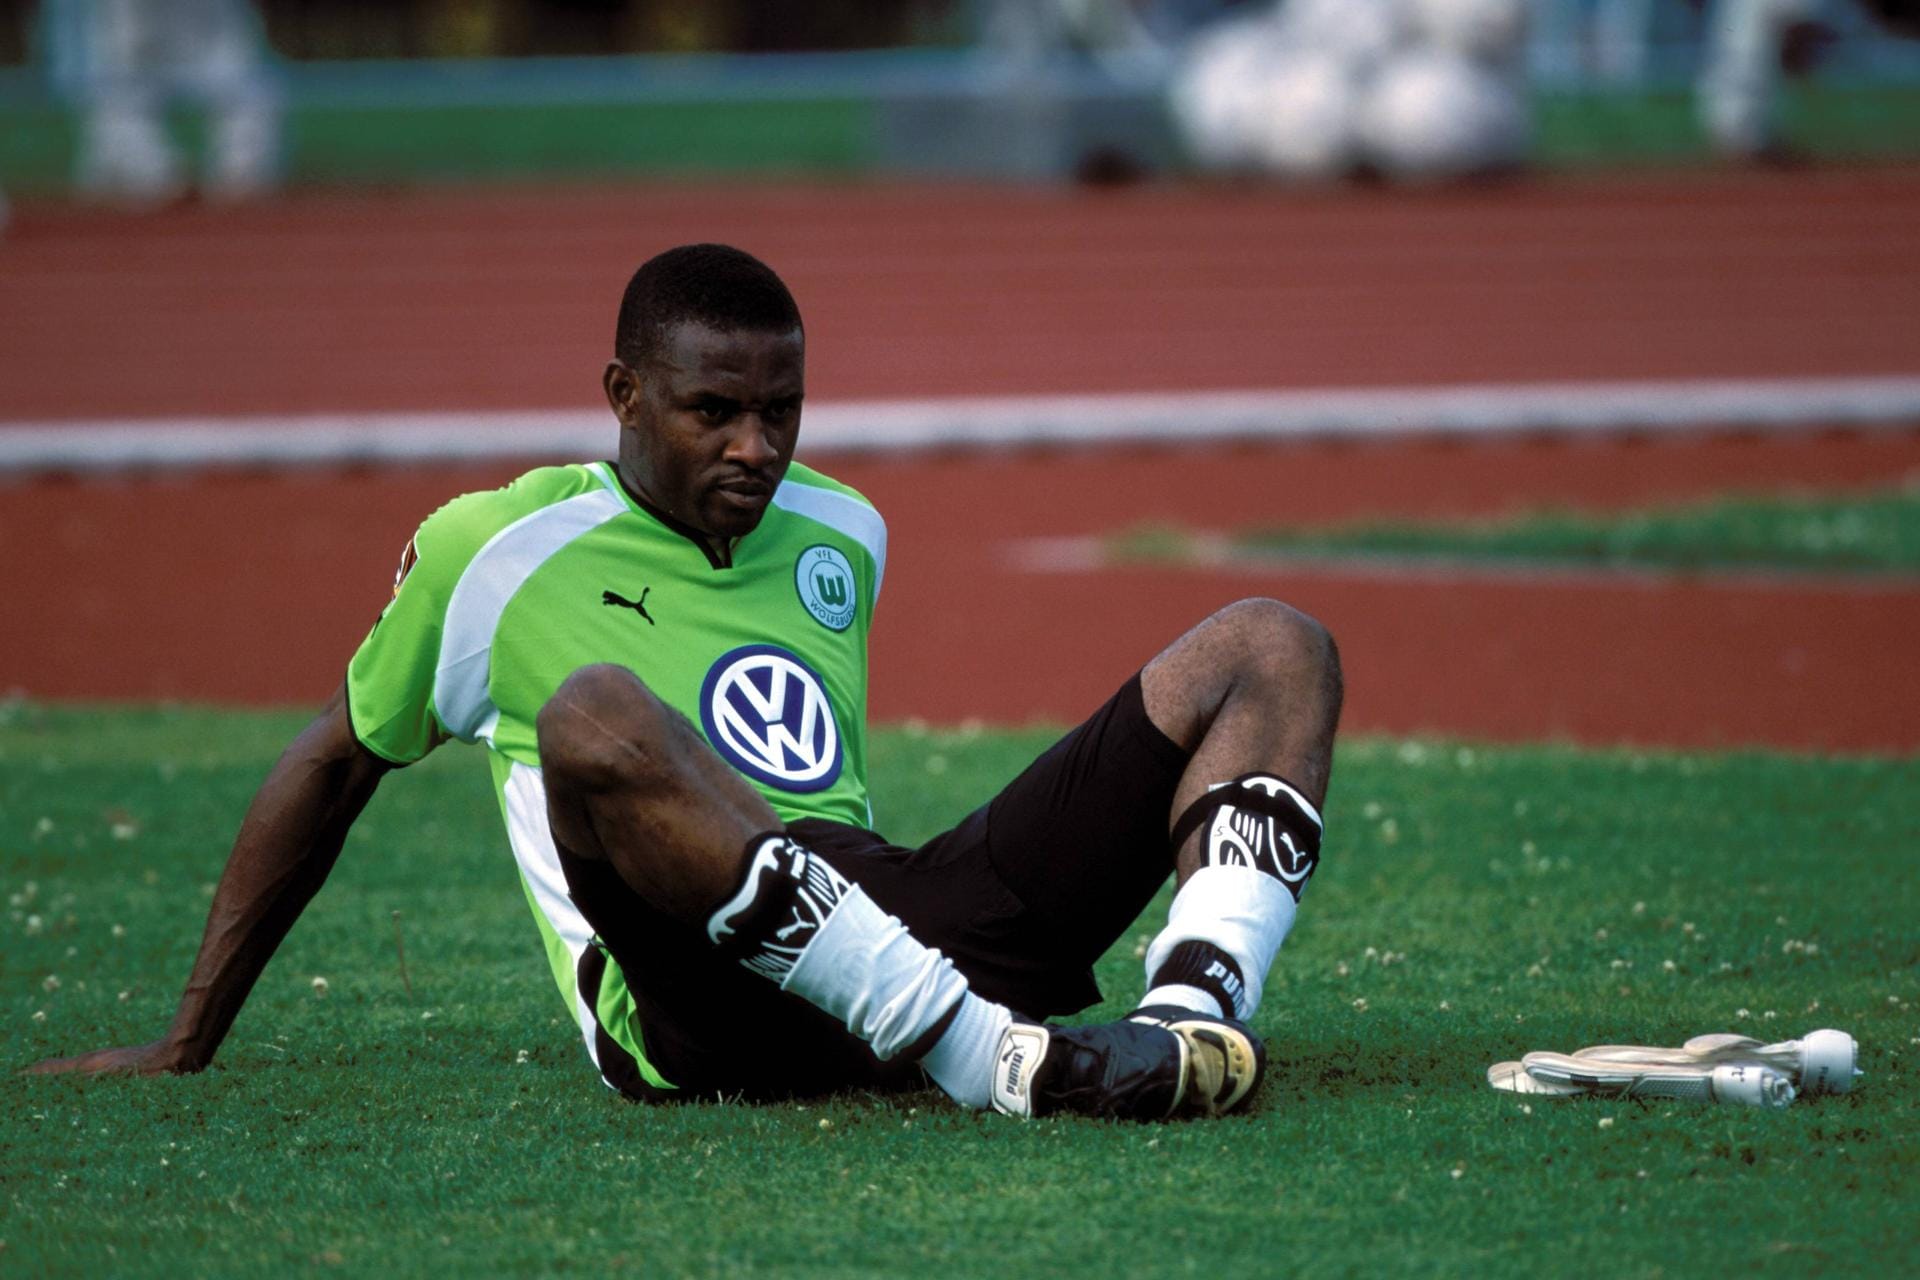 Charles Akonnor (damals VfL Wolfsburg) versuchte 2001 seine automatische Auto-Antenne zu bedienen. Doch die Antenne bohrte sich in seine Nase. Da die nicht aufhörte zu bluten, nahm der Ghanaer ein blutstillendes Mittel - das stand aber auf der Dopingliste und so musste er drei Spiele zuschauen.